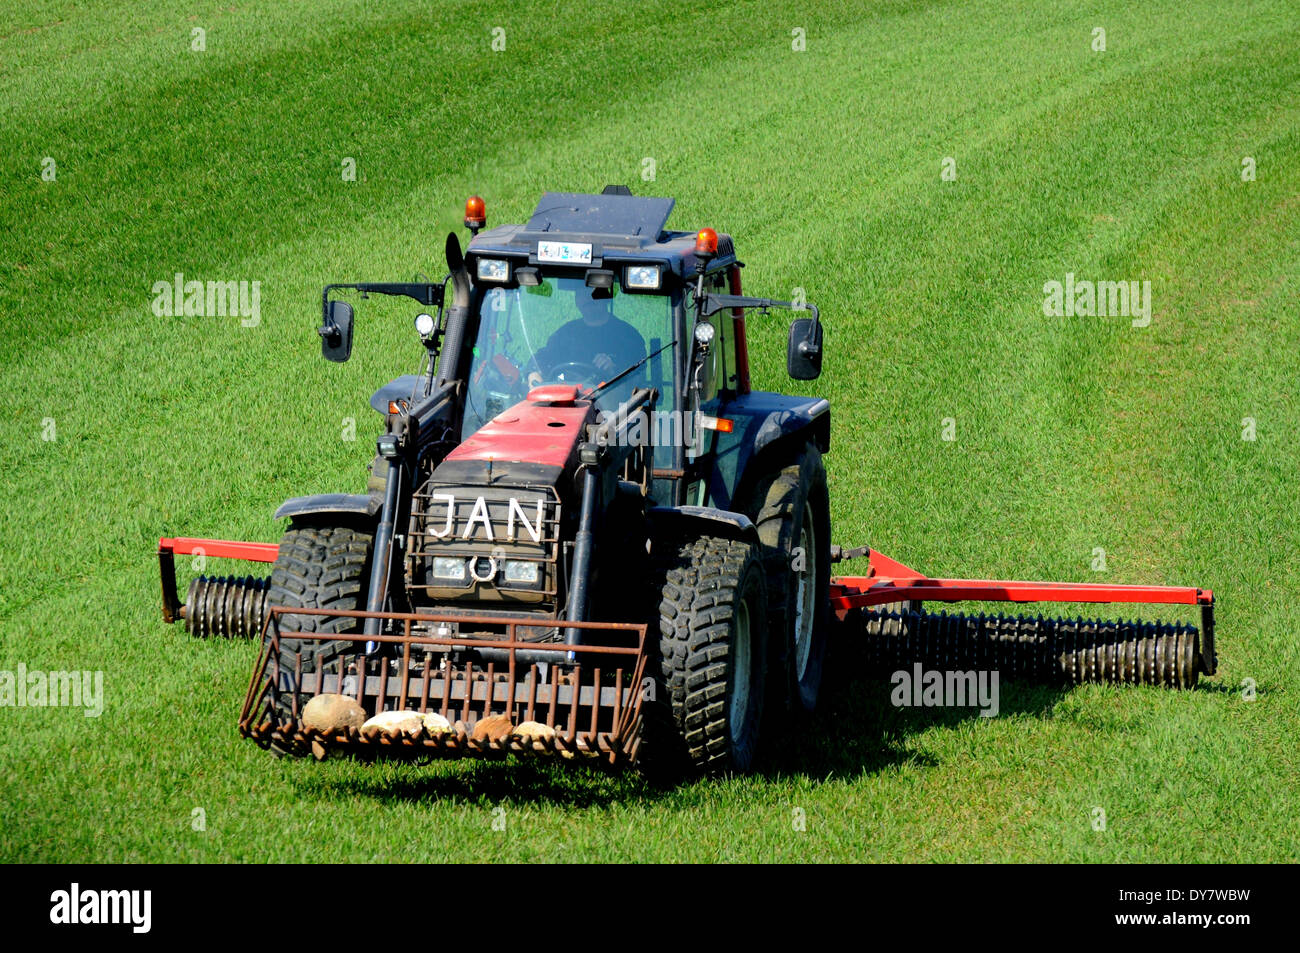 Traktor mit Cambridge-Walze arbeitet auf grünen Wiesen im Frühjahr Landwirtschaft. Ruuthsbo, Scania, Schweden Stockfoto